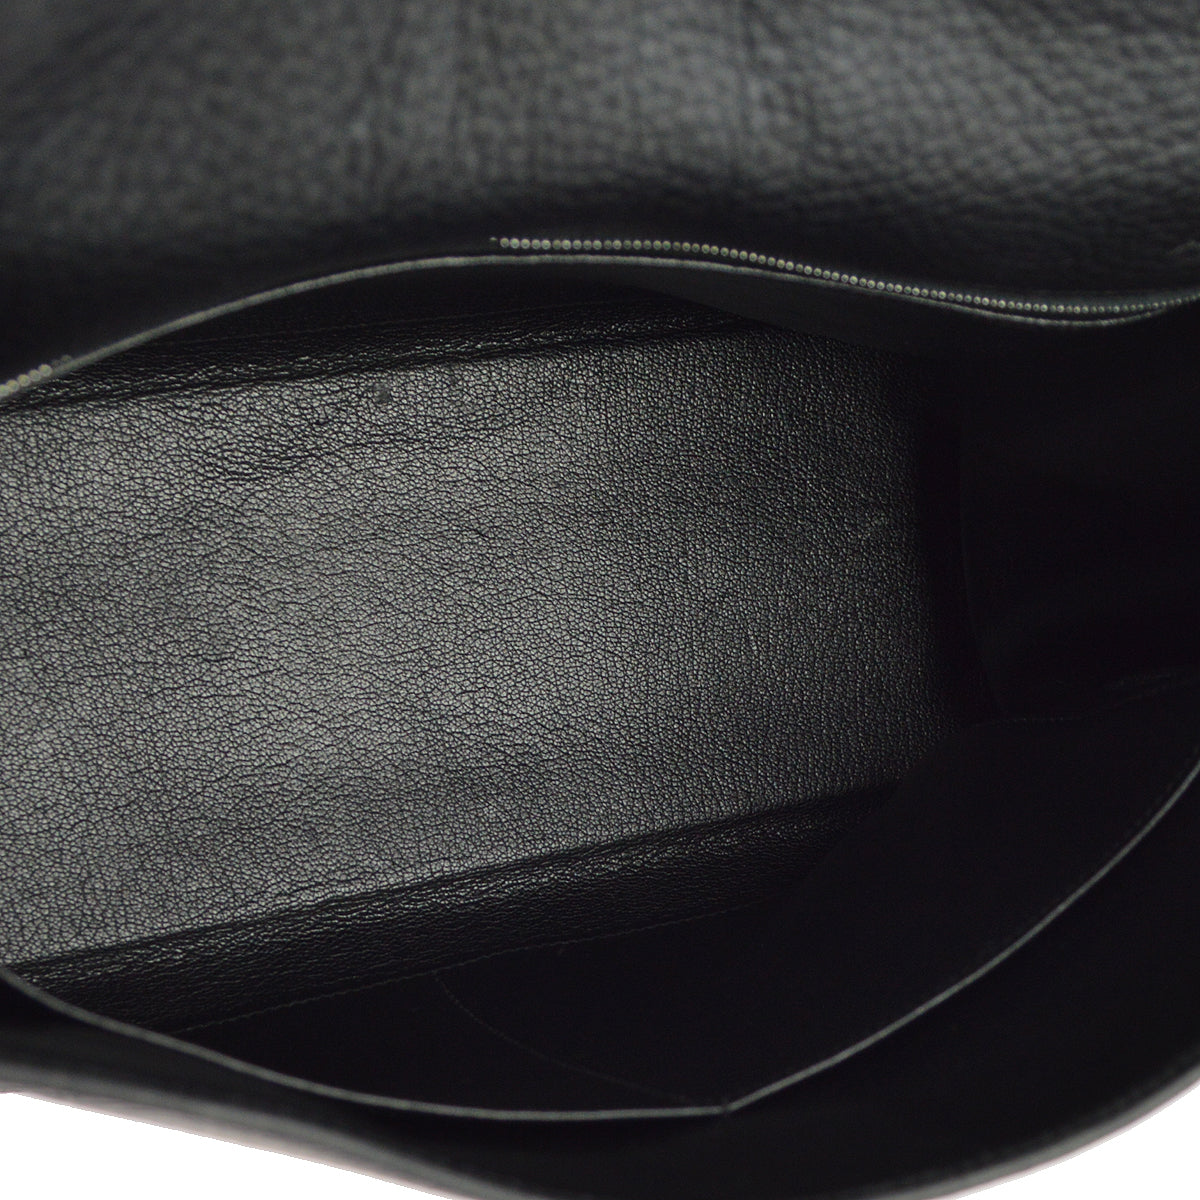 Hermes Black Taurillon Clemence Kelly 32 Retourne 2way Shoulder Handbag